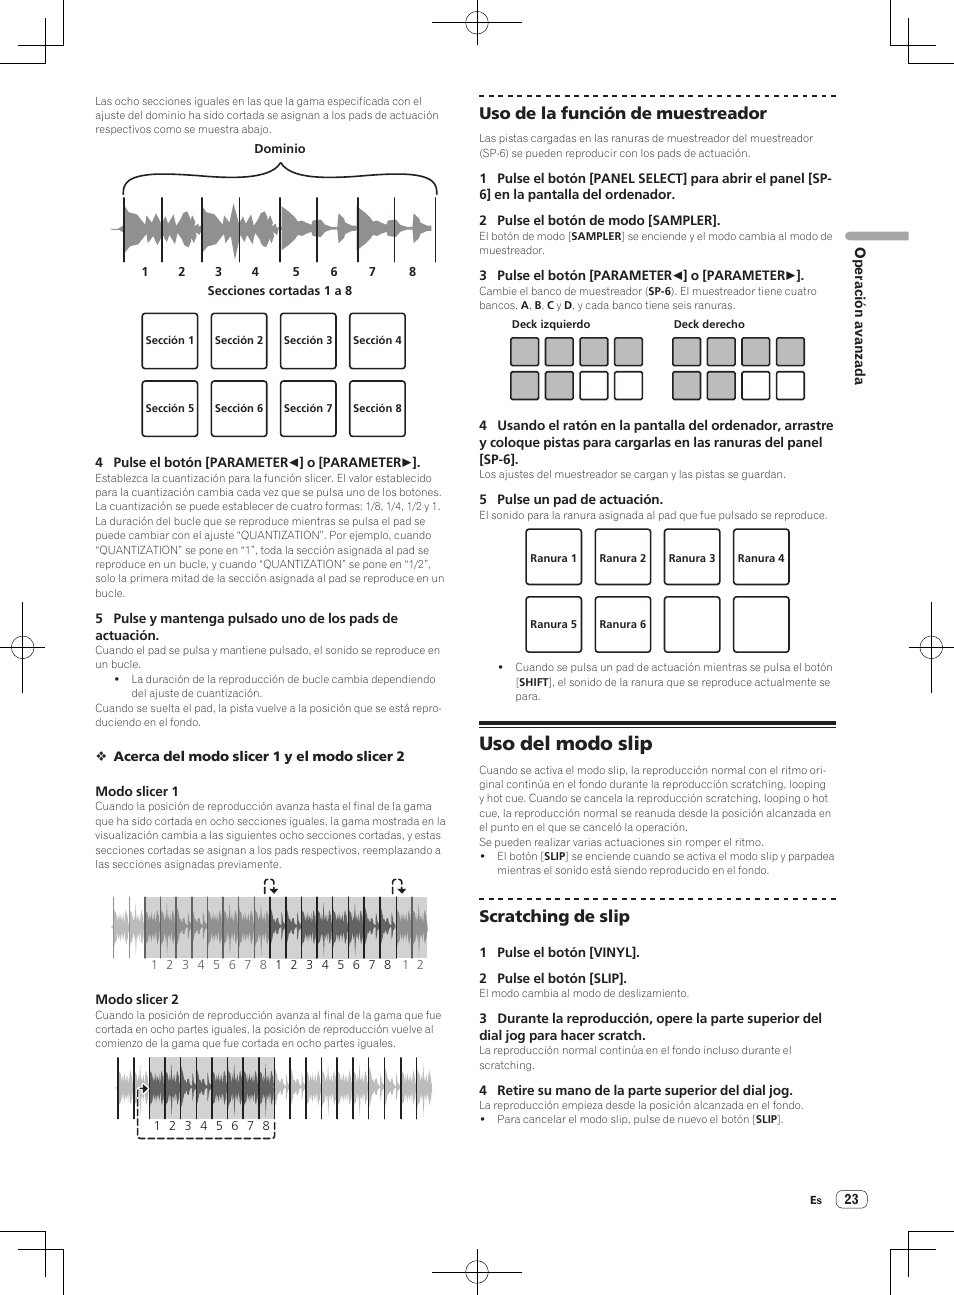 Uso del modo slip, Uso de la función de muestreador, Scratching de slip | Pioneer DDJ-SX Manual del usuario | Página 23 / 33